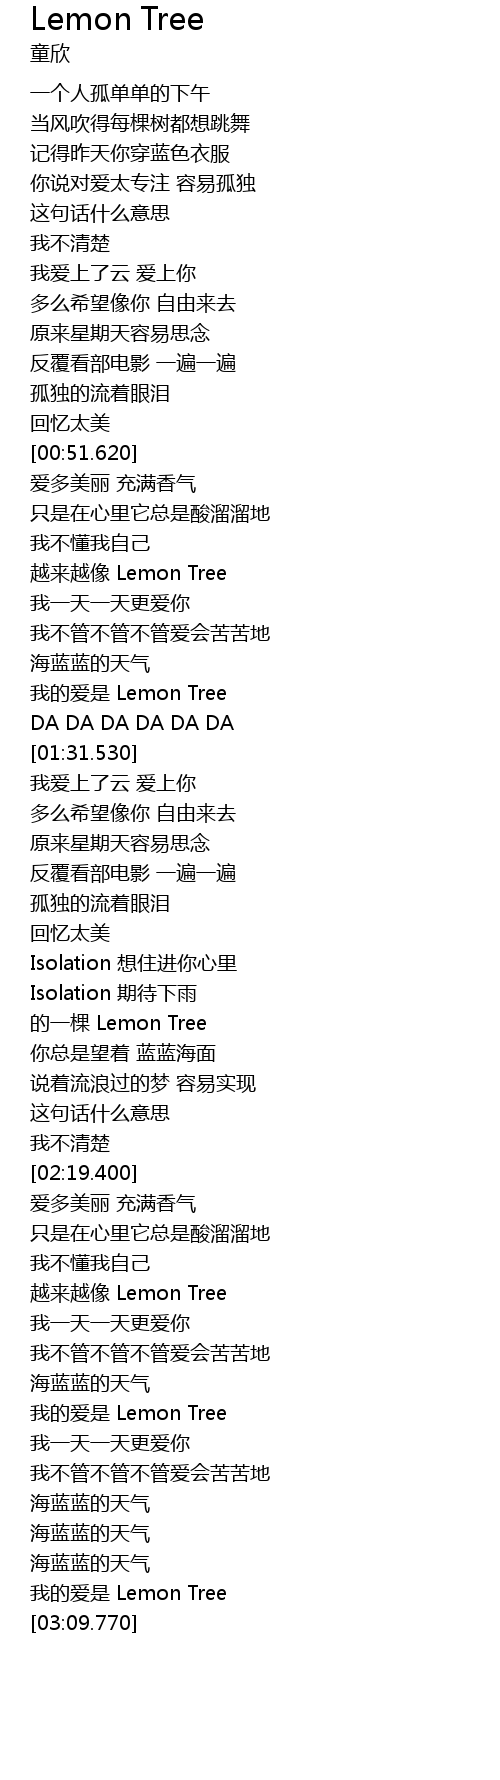 Lemon Tree Lyrics Follow Lyrics